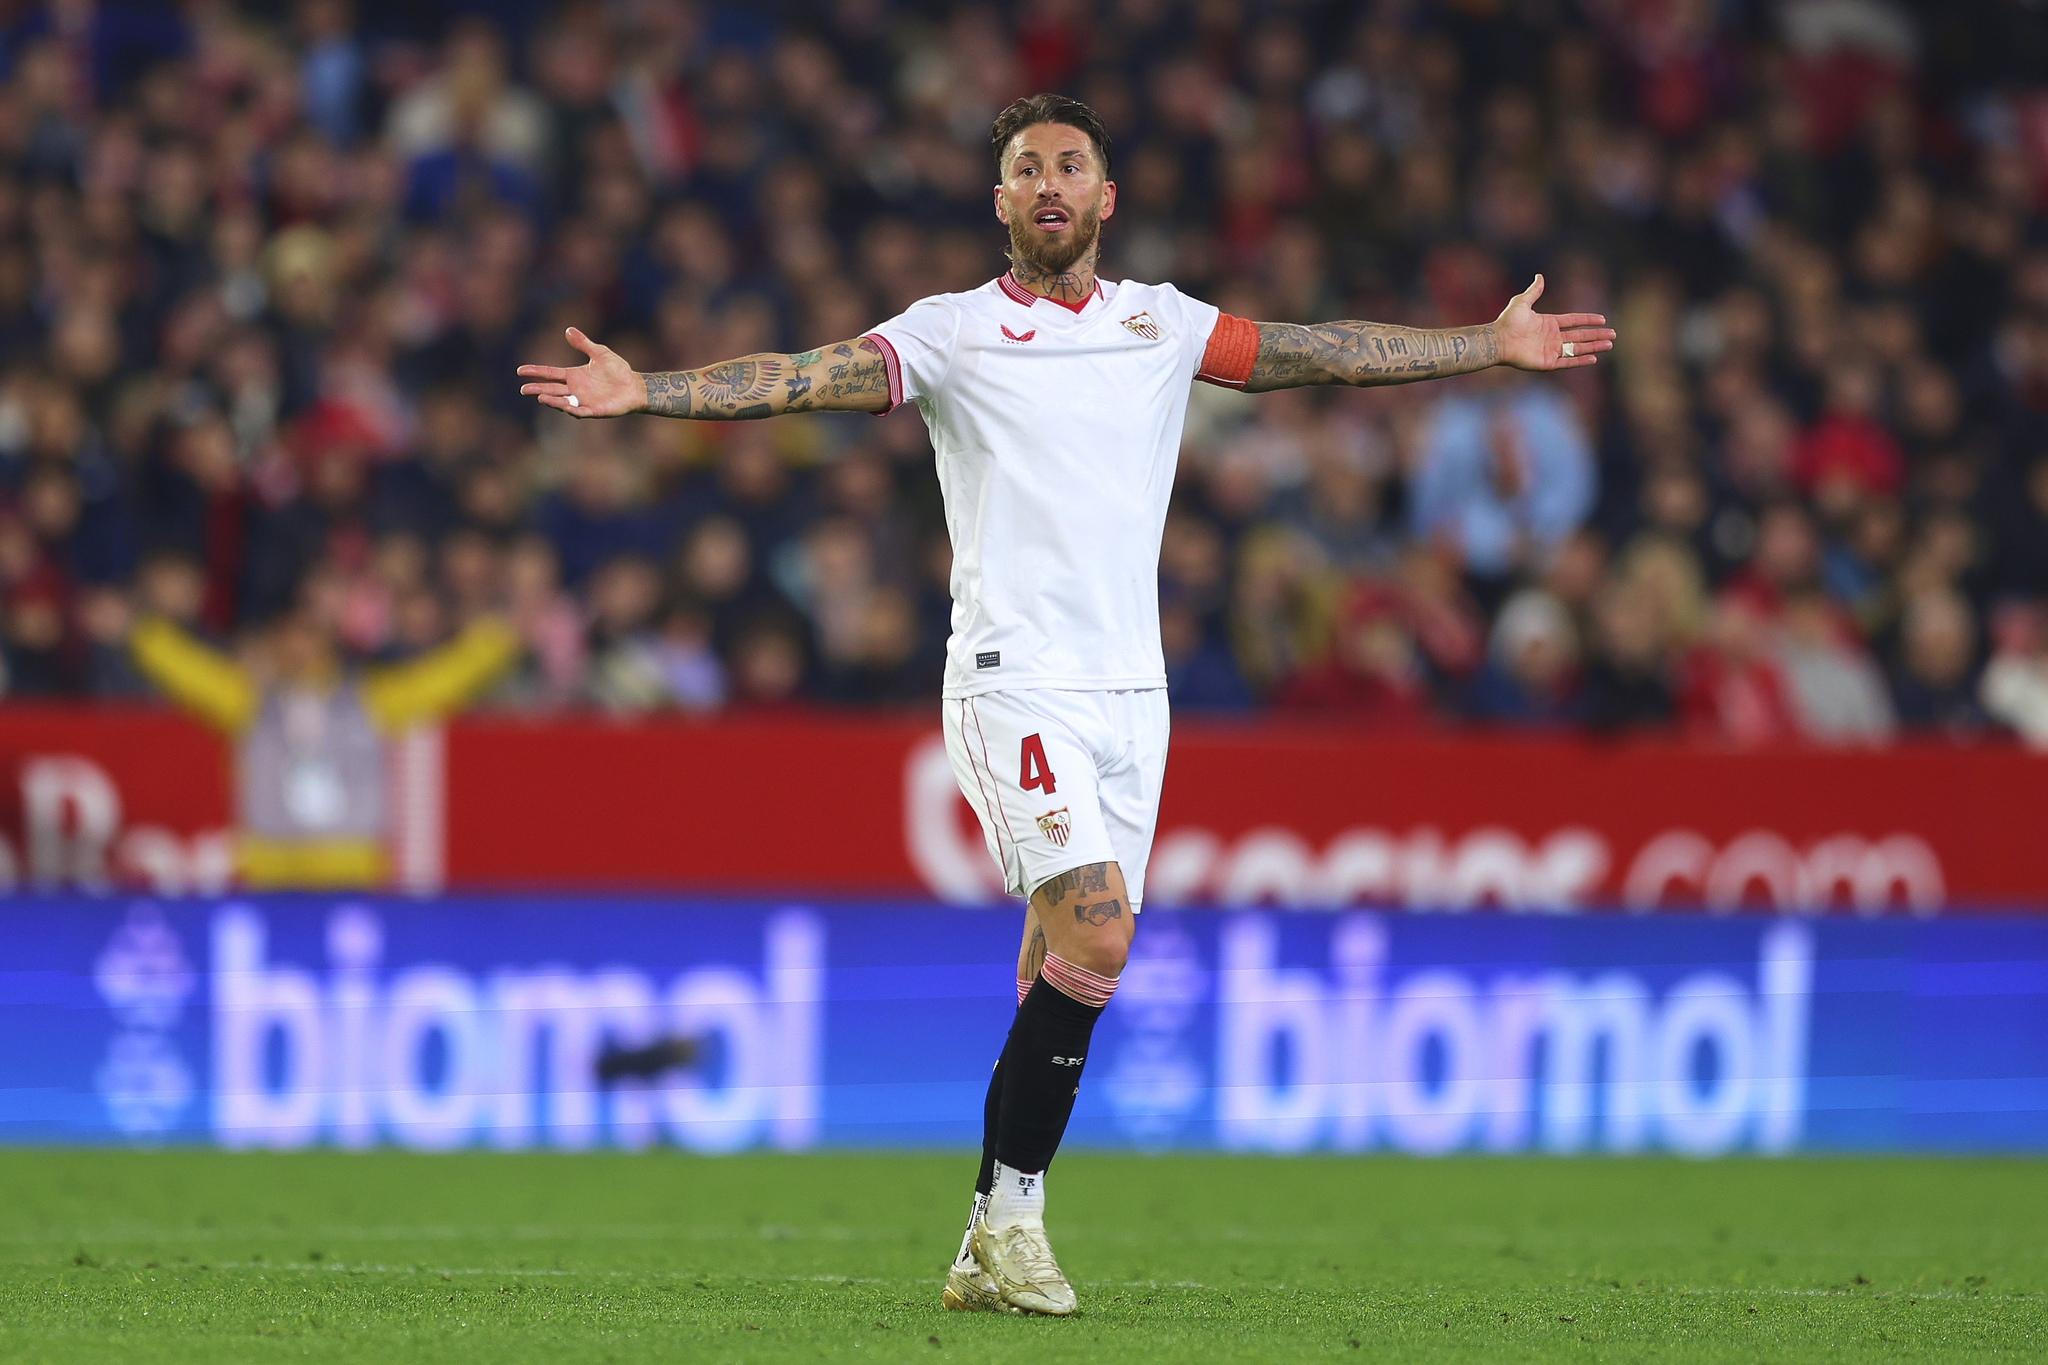 El Sevilla quiere que Ramos siga, la decisin est en su mano